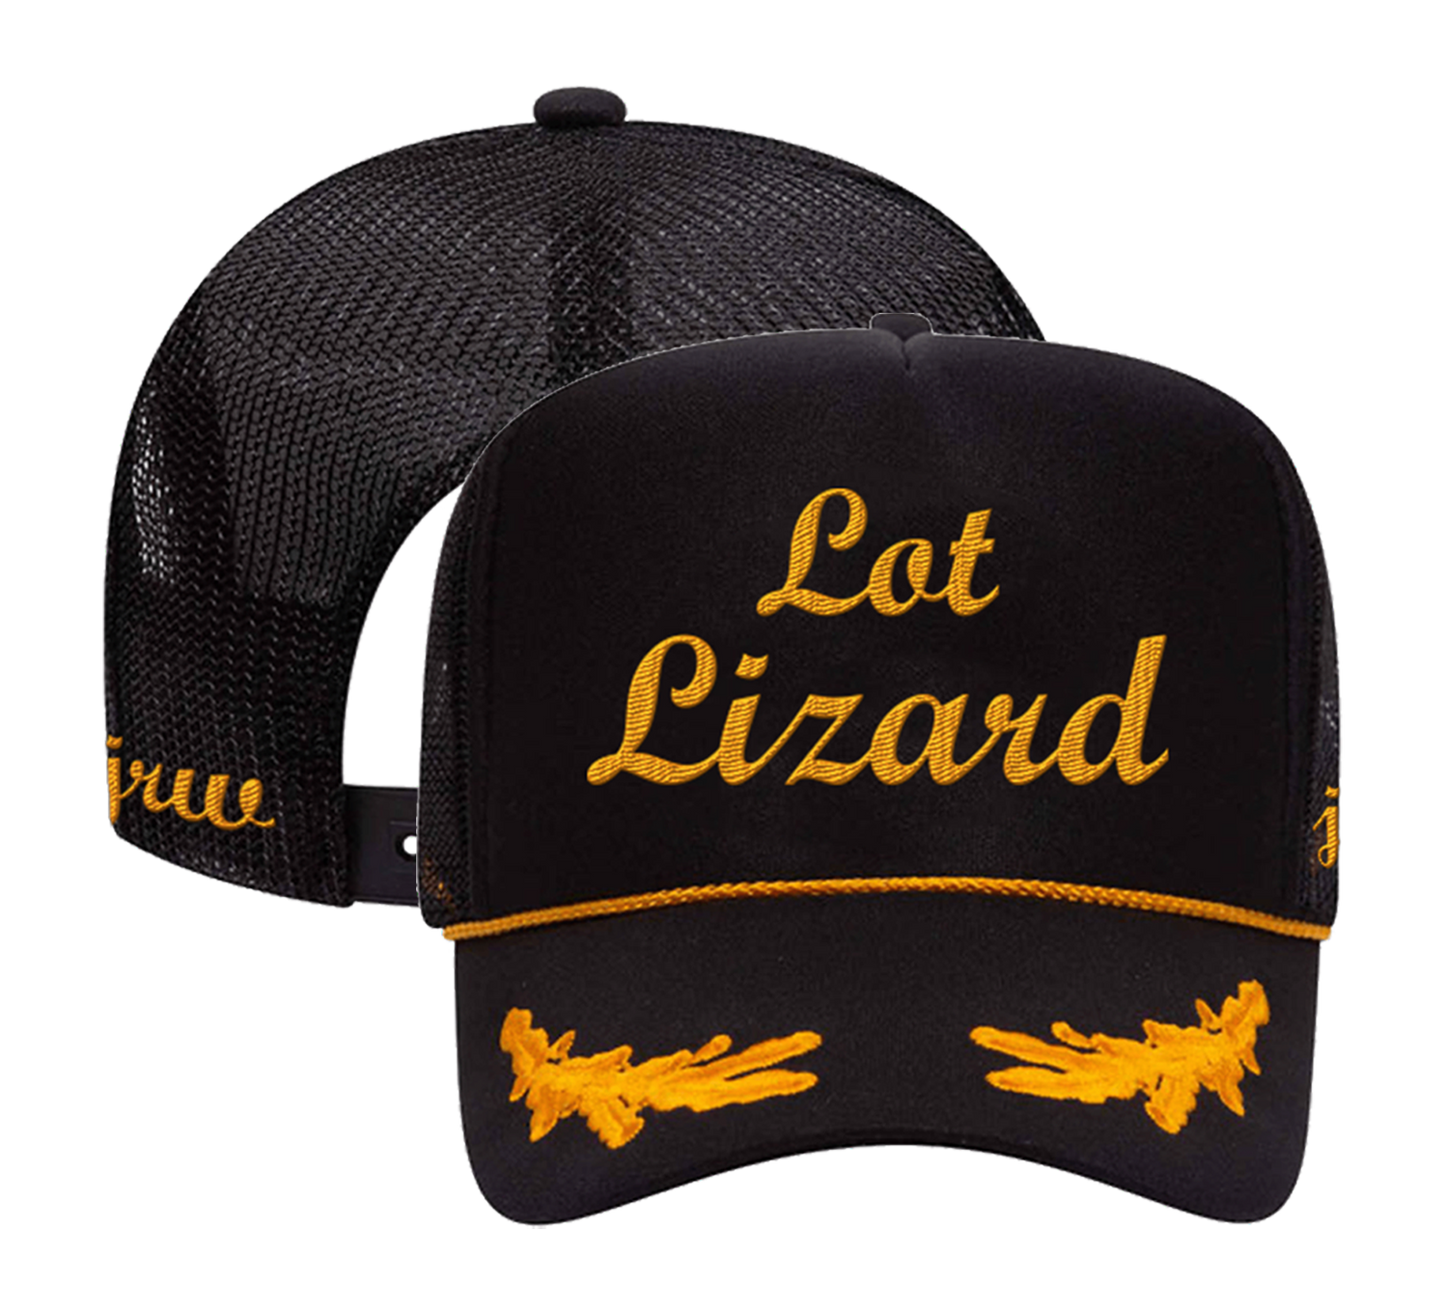 Lot Lizard Hat